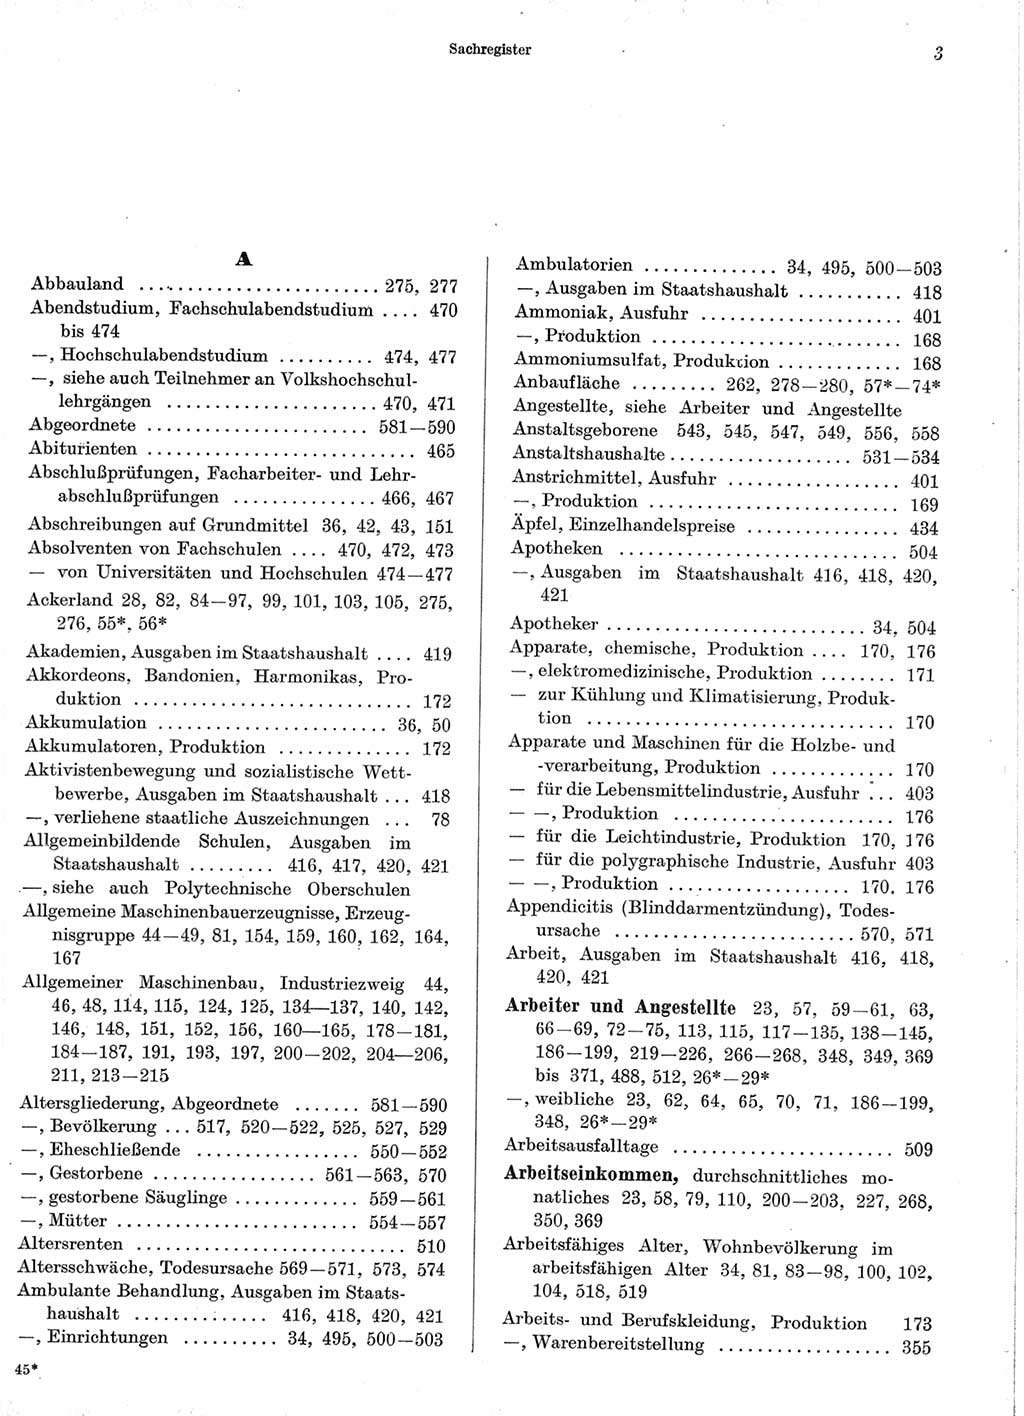 Statistisches Jahrbuch der Deutschen Demokratischen Republik (DDR) 1966, Seite 3 (Stat. Jb. DDR 1966, S. 3)